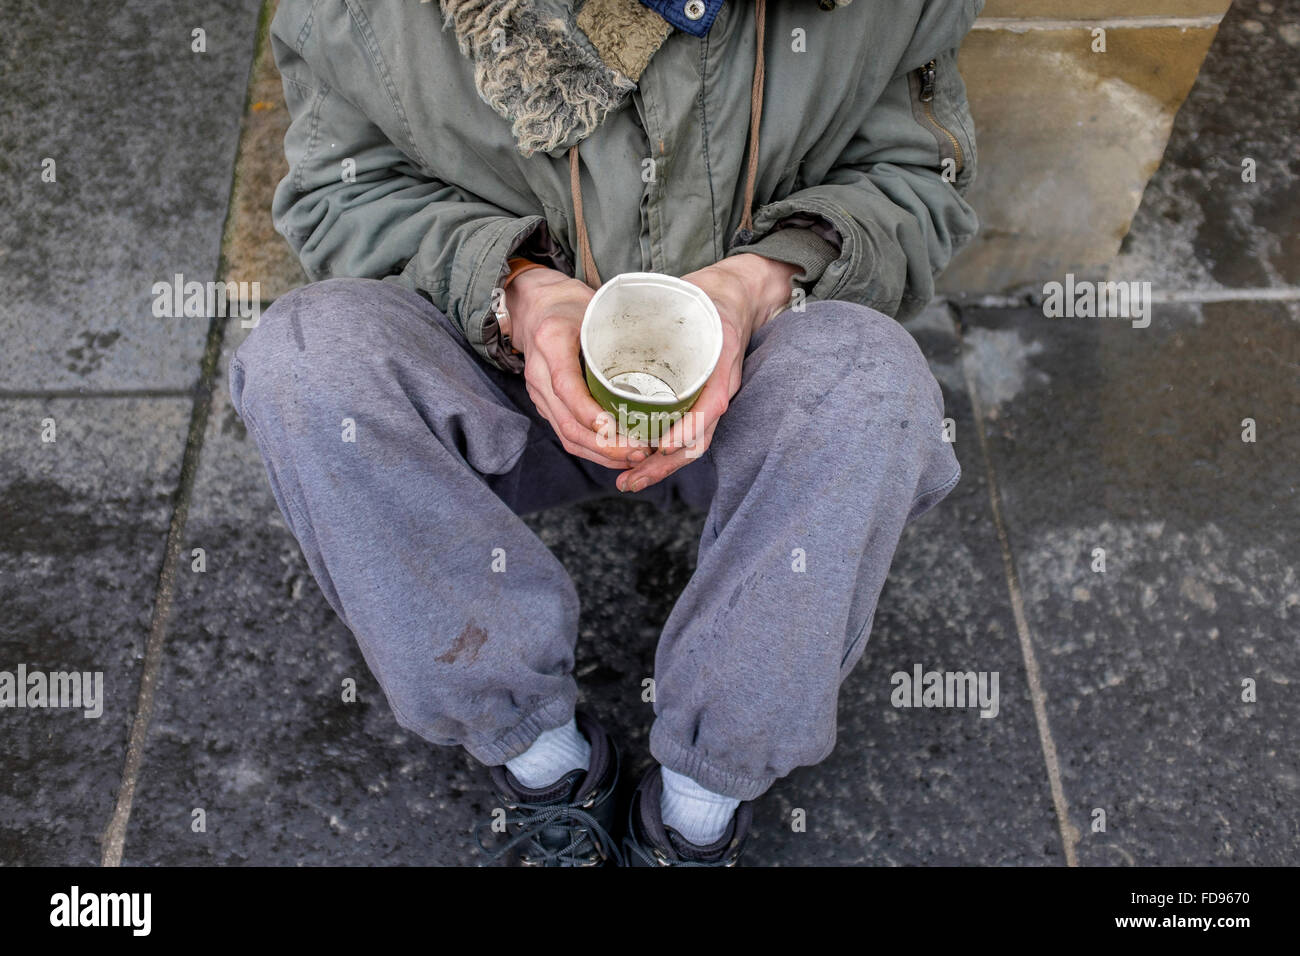 Mendiant de la rue, assis sur un trottoir avec une tasse en carton pour collecter de l'argent et de la charité. Banque D'Images